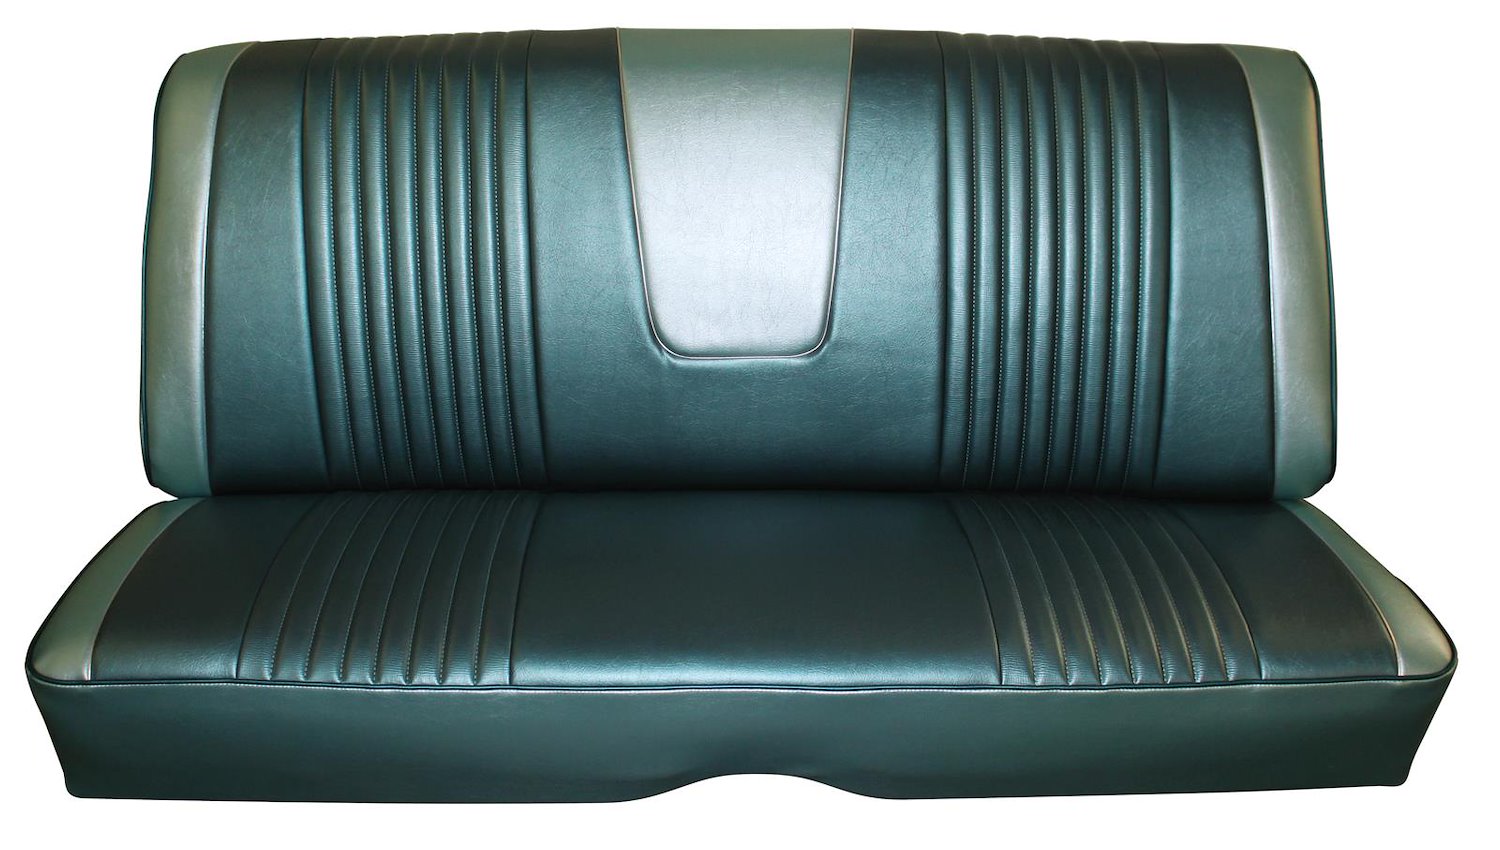 1963 Galaxie 500 Convertible Rear Bench Seat T=L-1377, I=L-1377 FM#2